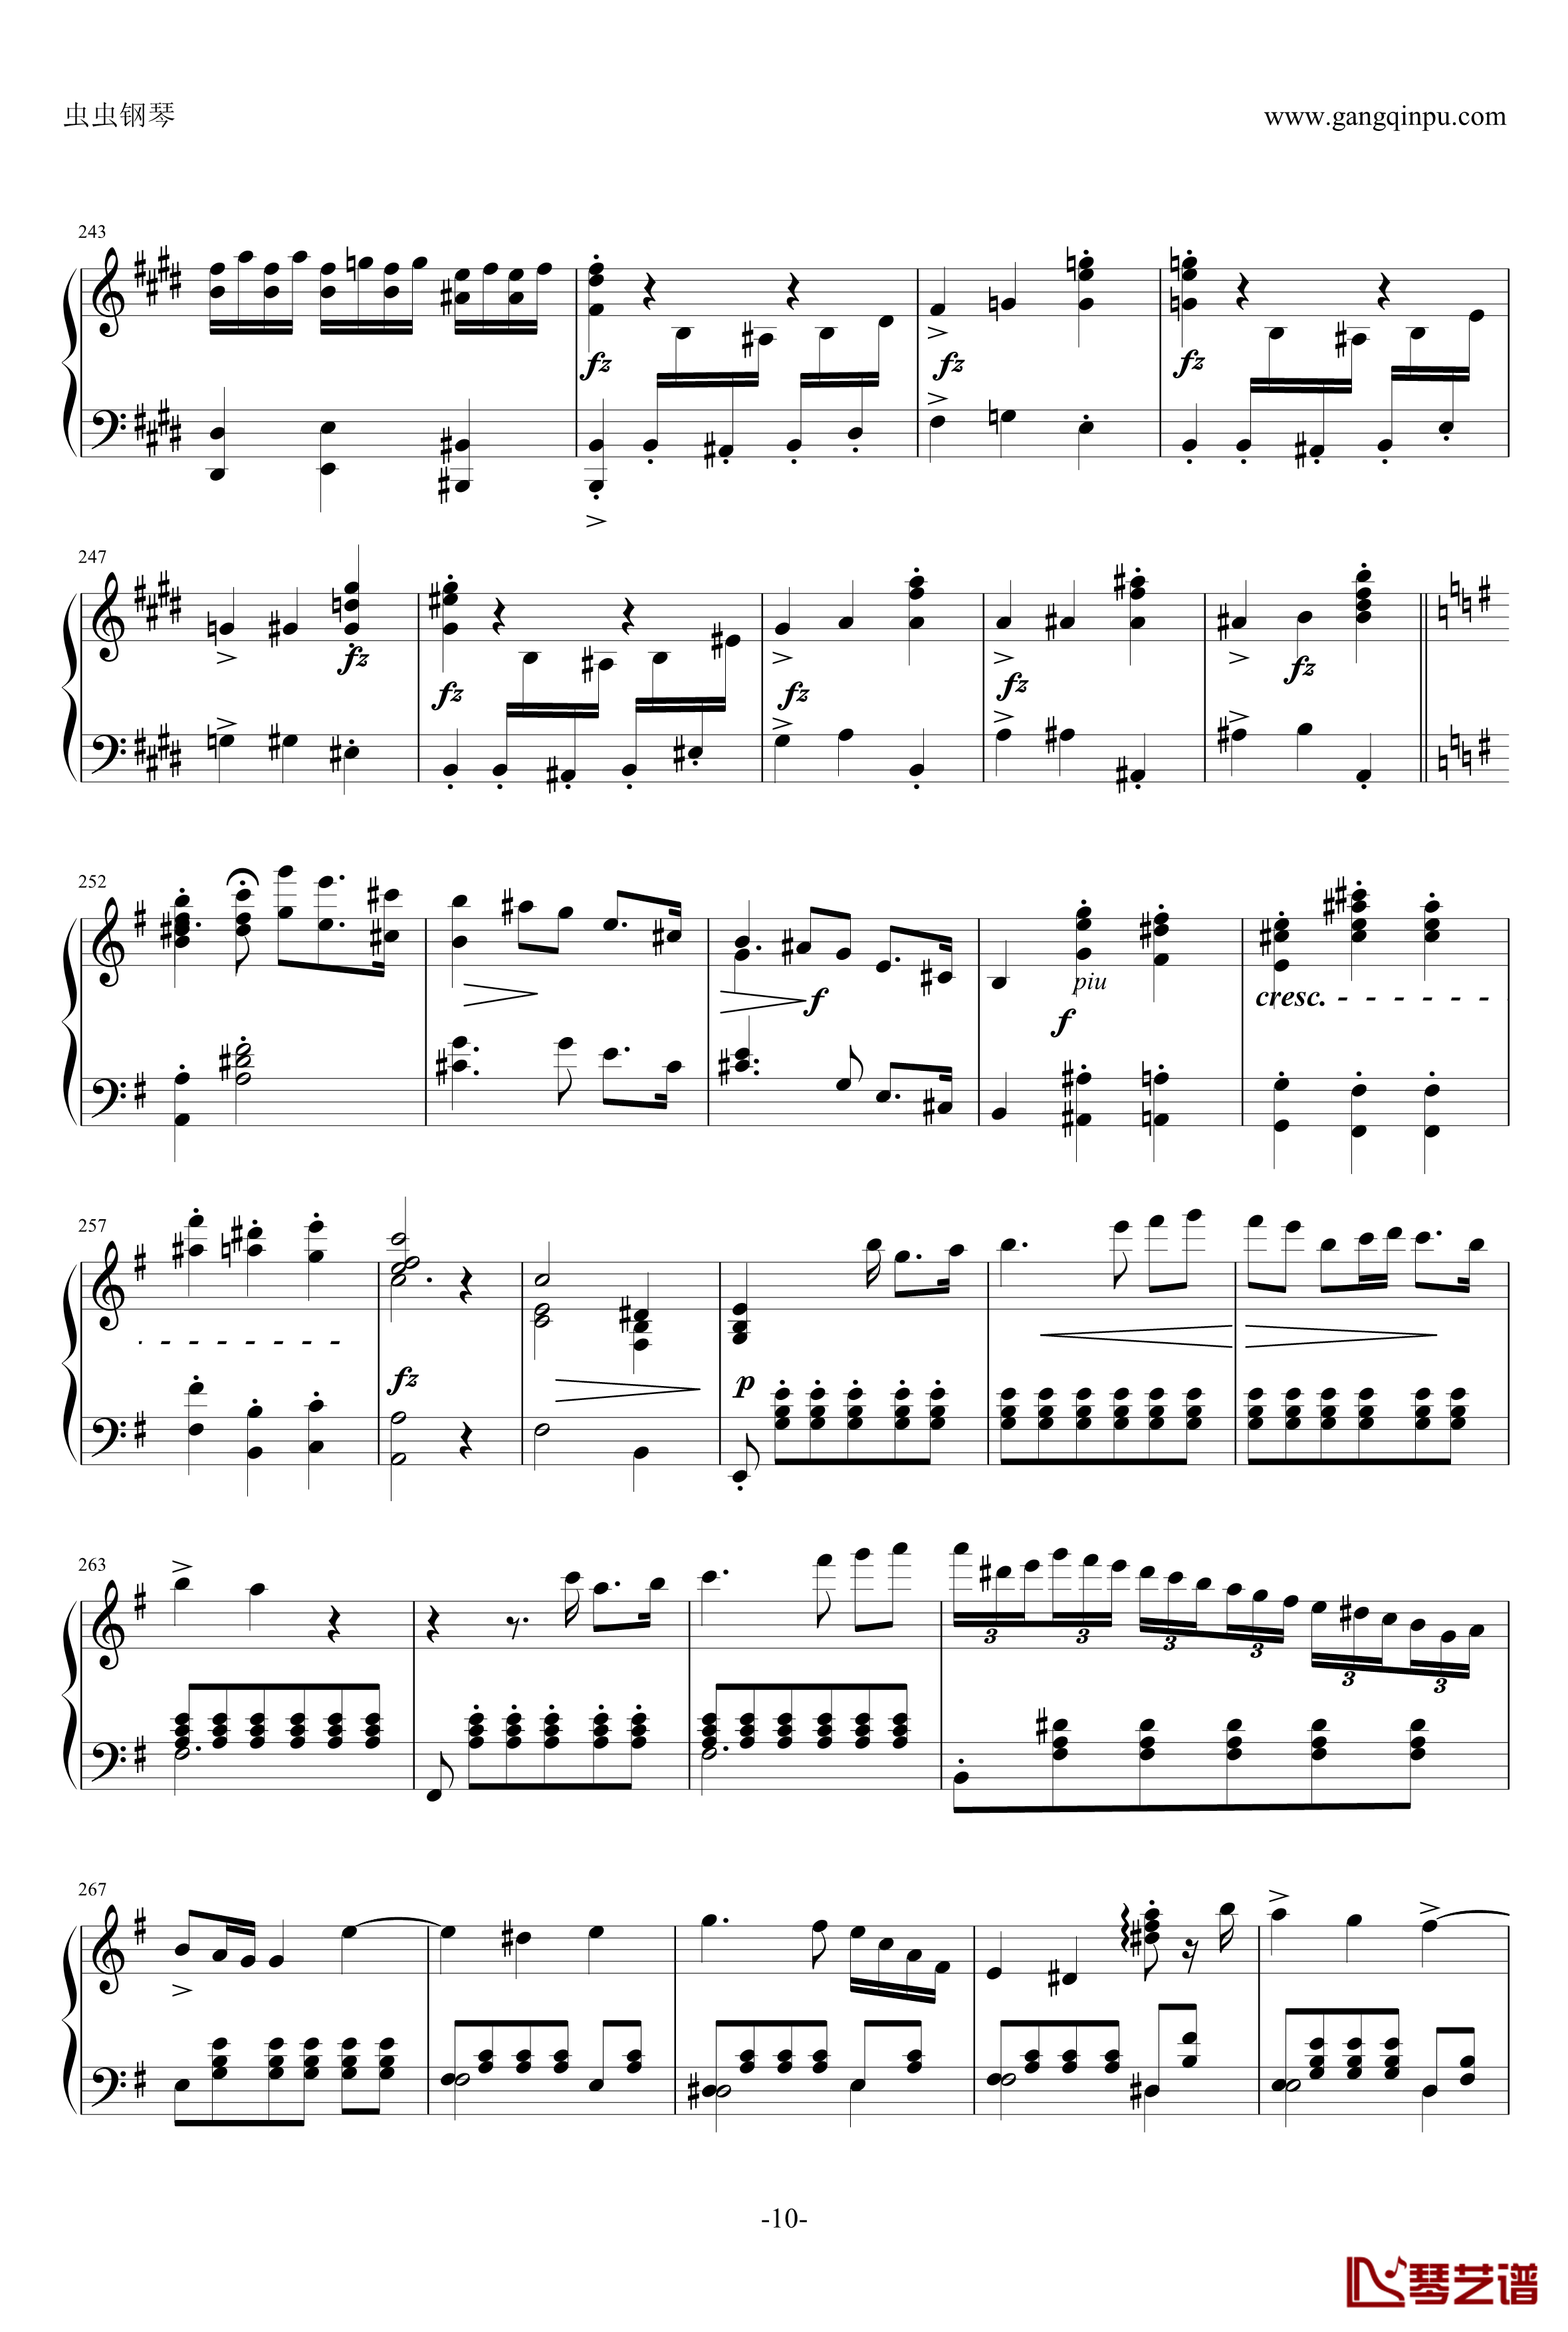 e小调钢琴协奏曲钢琴谱-乐之琴简易钢琴版-肖邦-chopin10